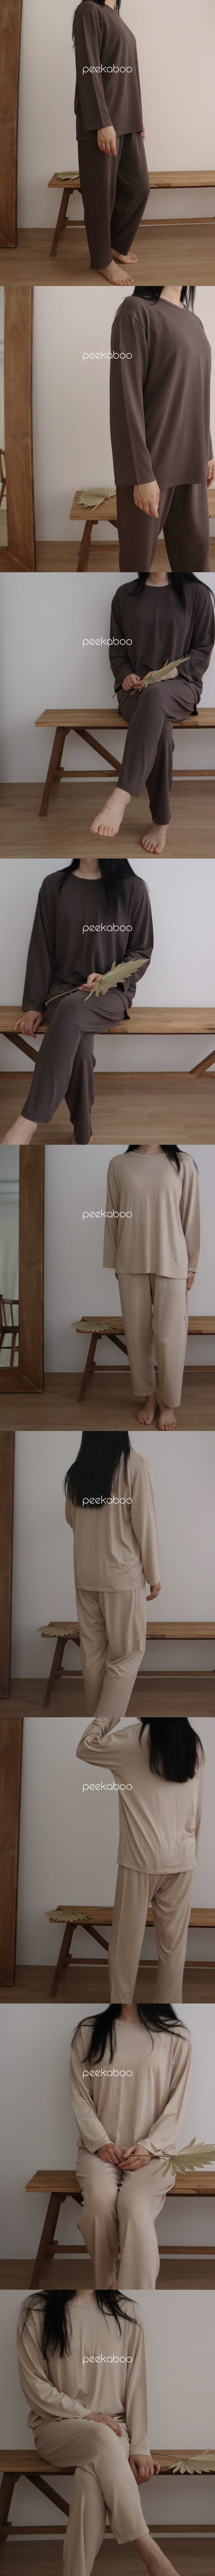 Peekaboo - Korean Women Fashion - #womensfashion - Soft Dad - 4